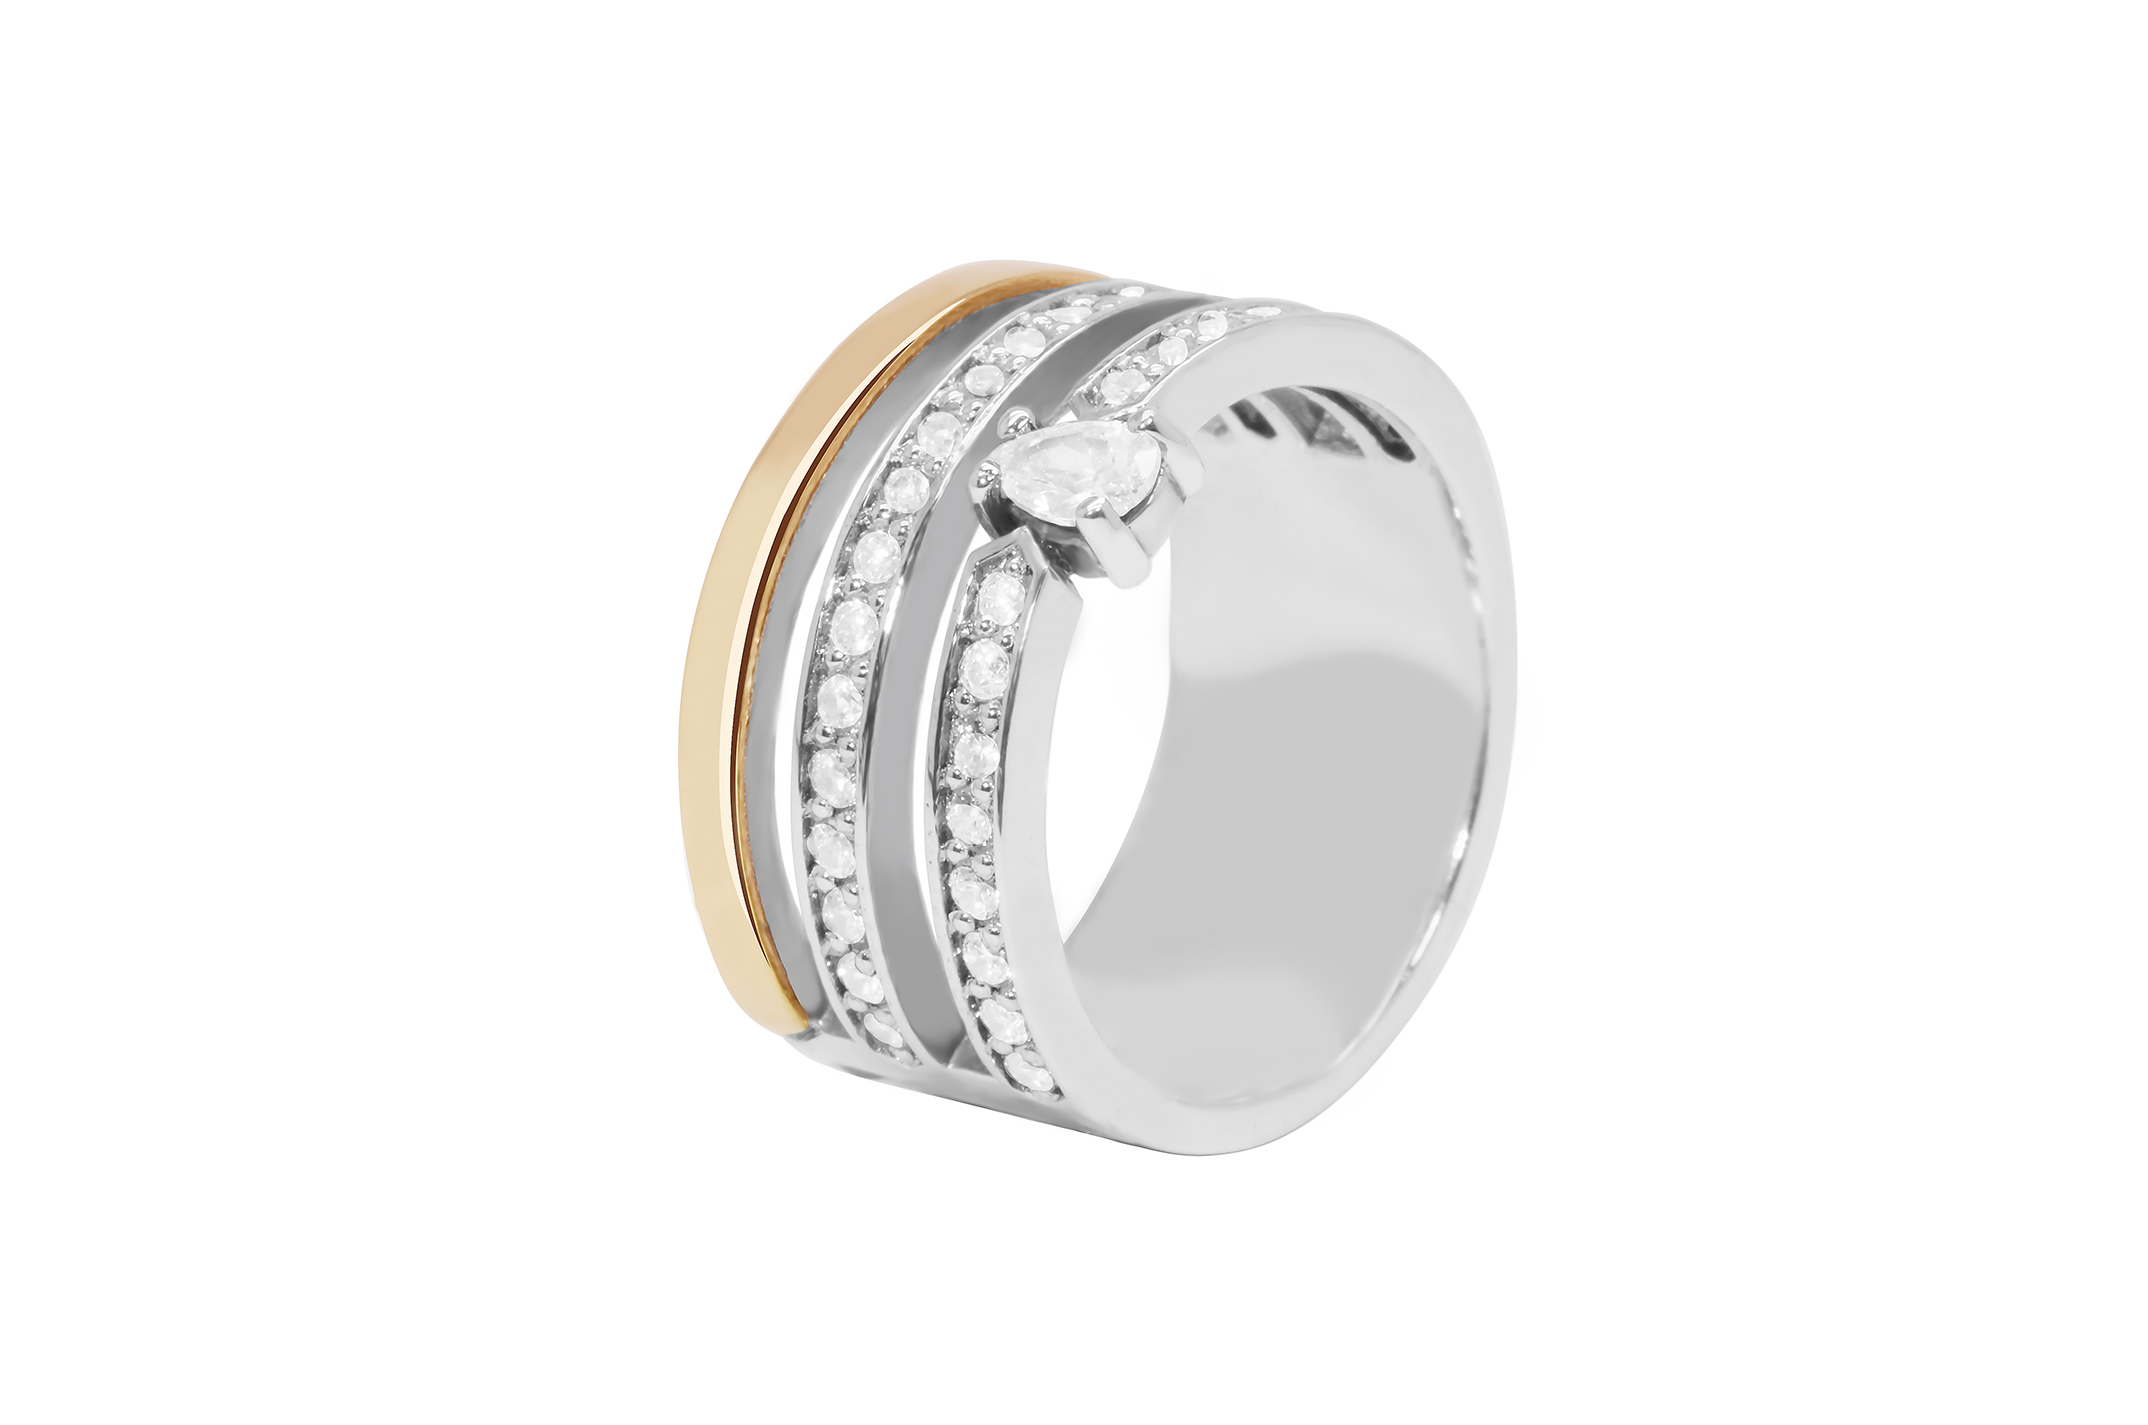 Joia: anel; Material: prata 925 e ouro 9 kt;Peso: 8.5 gr (prata) e 0.8 gr (ouro);Pedras: zirconias;Cor: bicolor;Tamanho: 12;Género: mulher